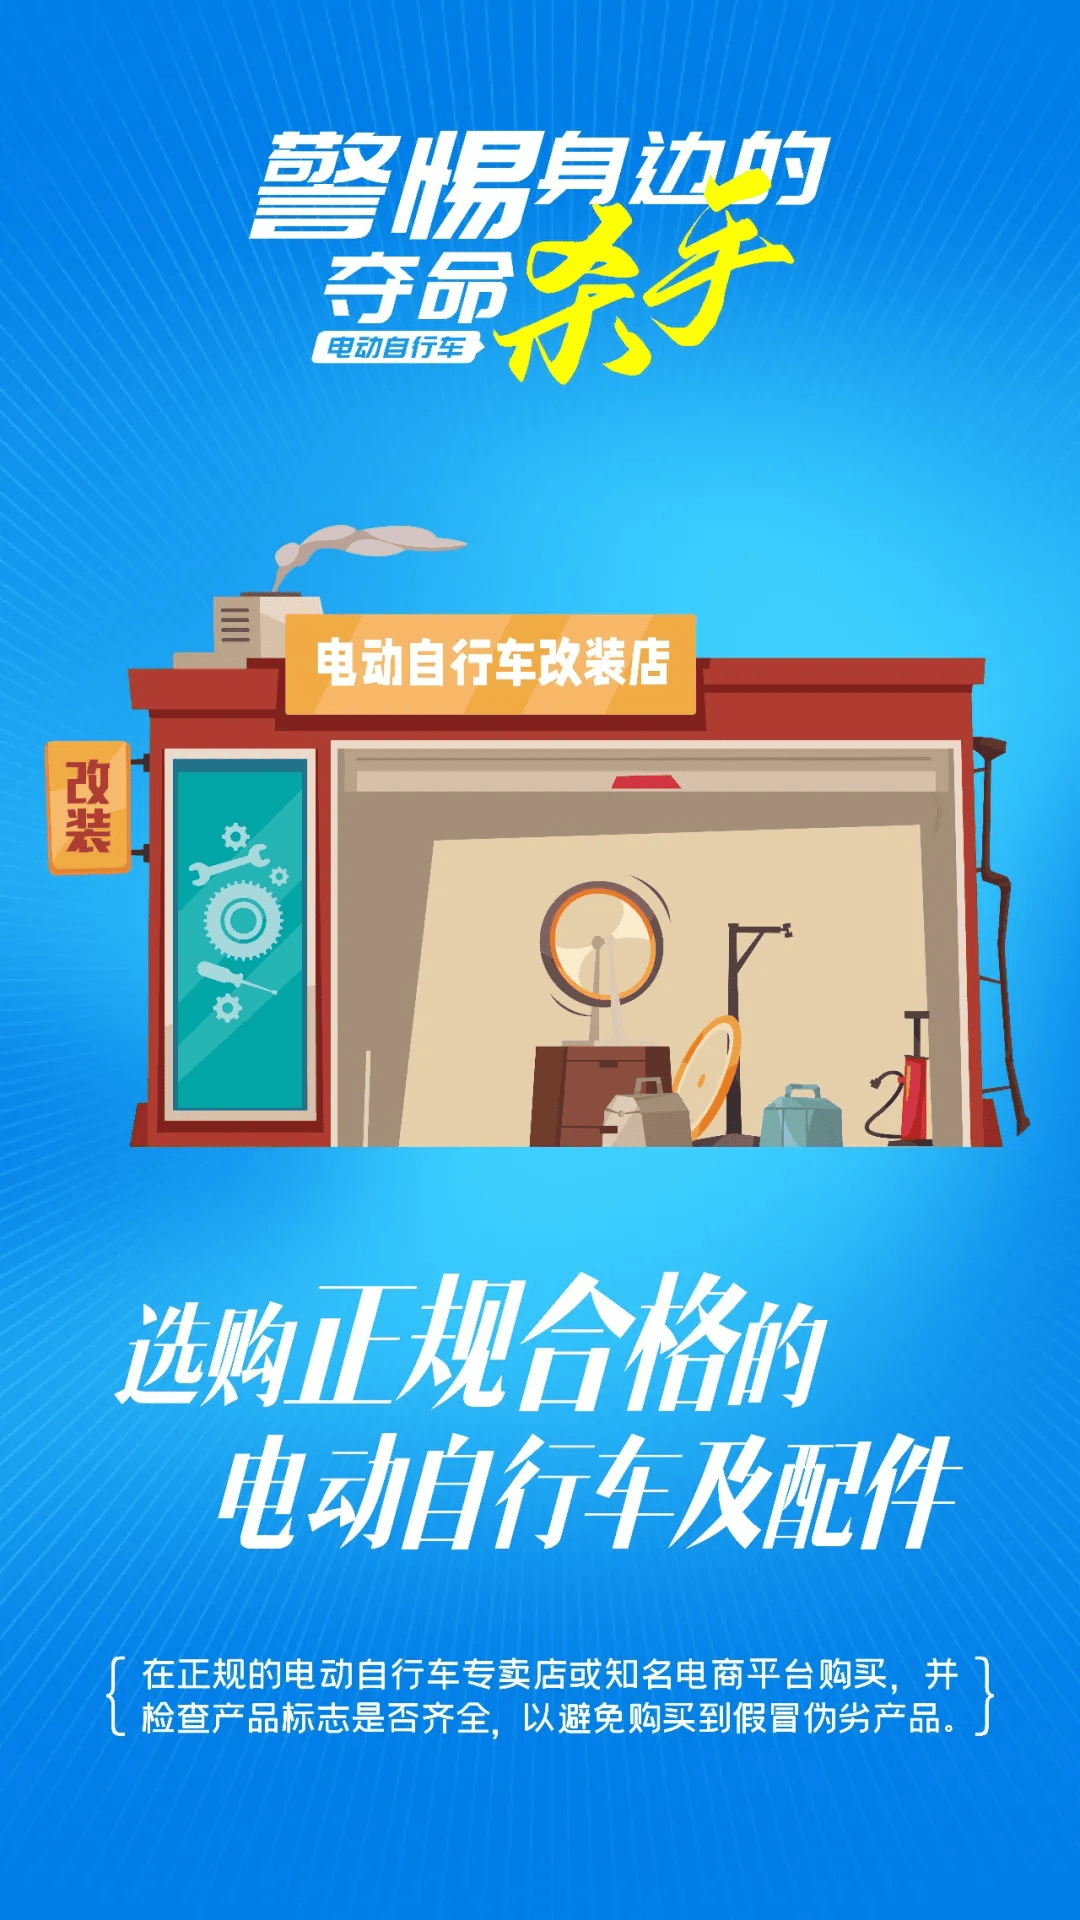 环球人物网 :内部免费一肖一码-广州海珠一电动自行车车棚爆燃，附近有多栋居民楼、商超等！